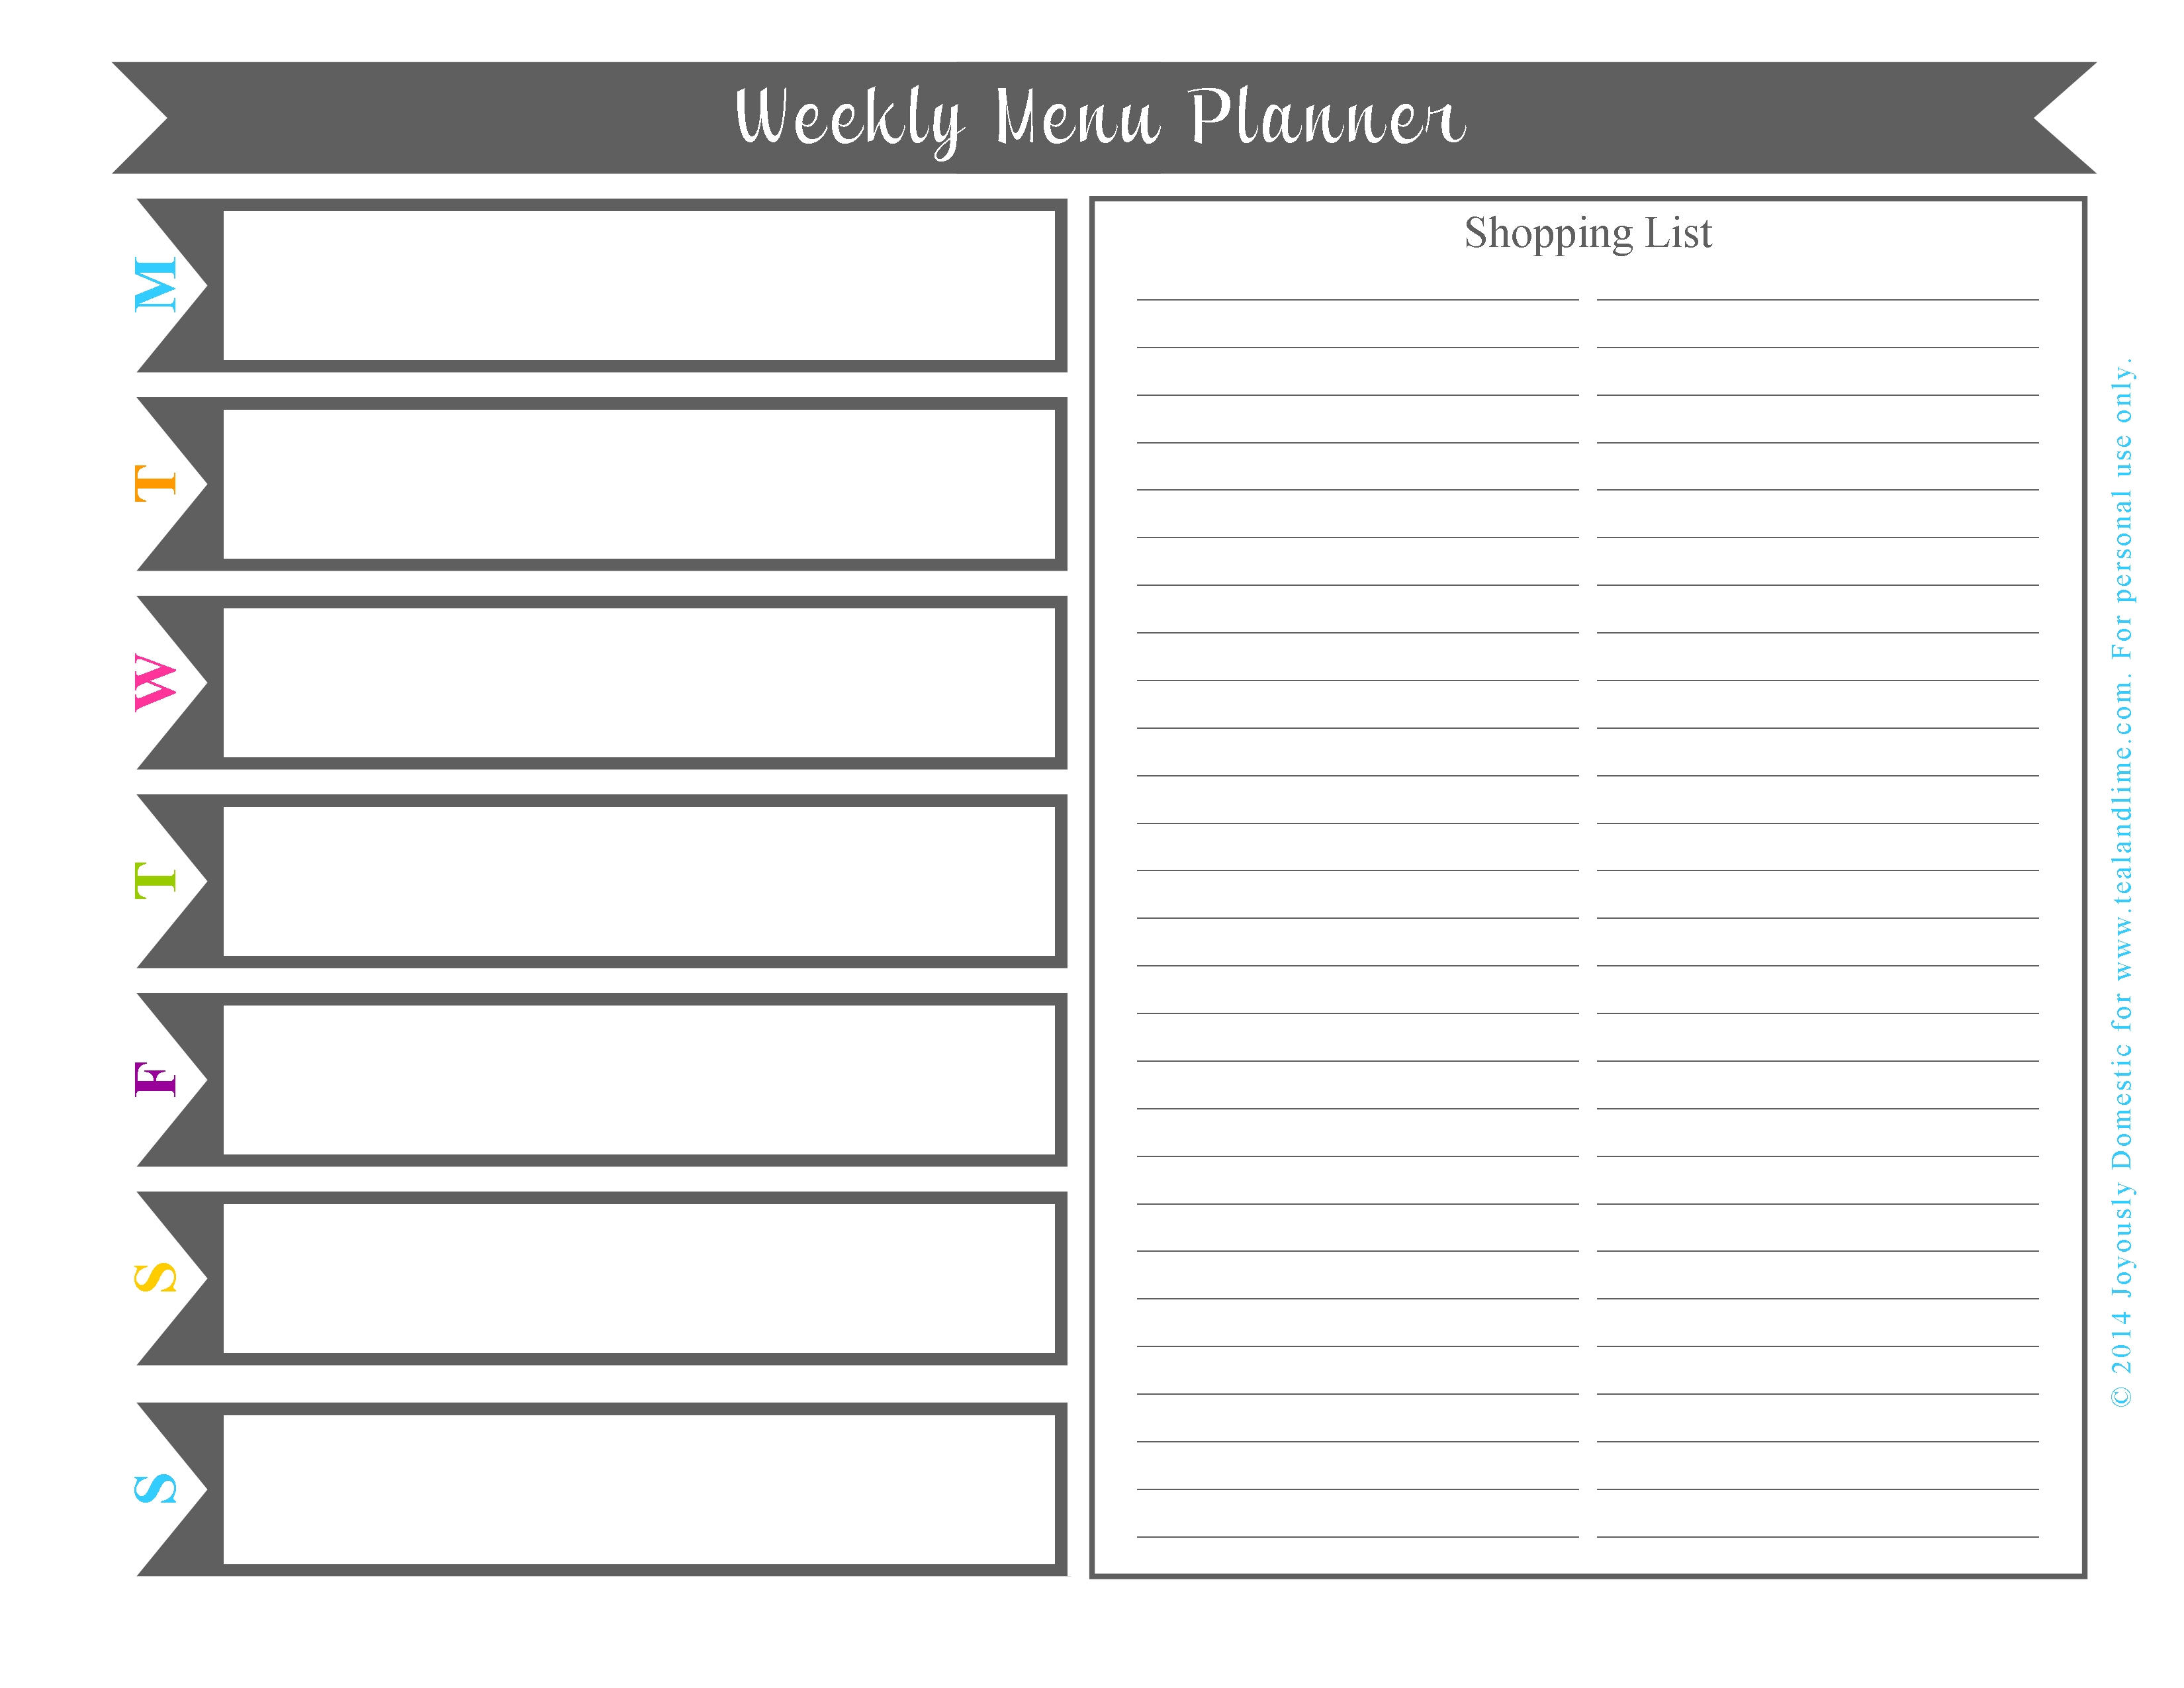 Plan Your Weekly Dinner Menu In Under 30 Minutes (Free Printable)  Monthly Printable Blank Menus To Print